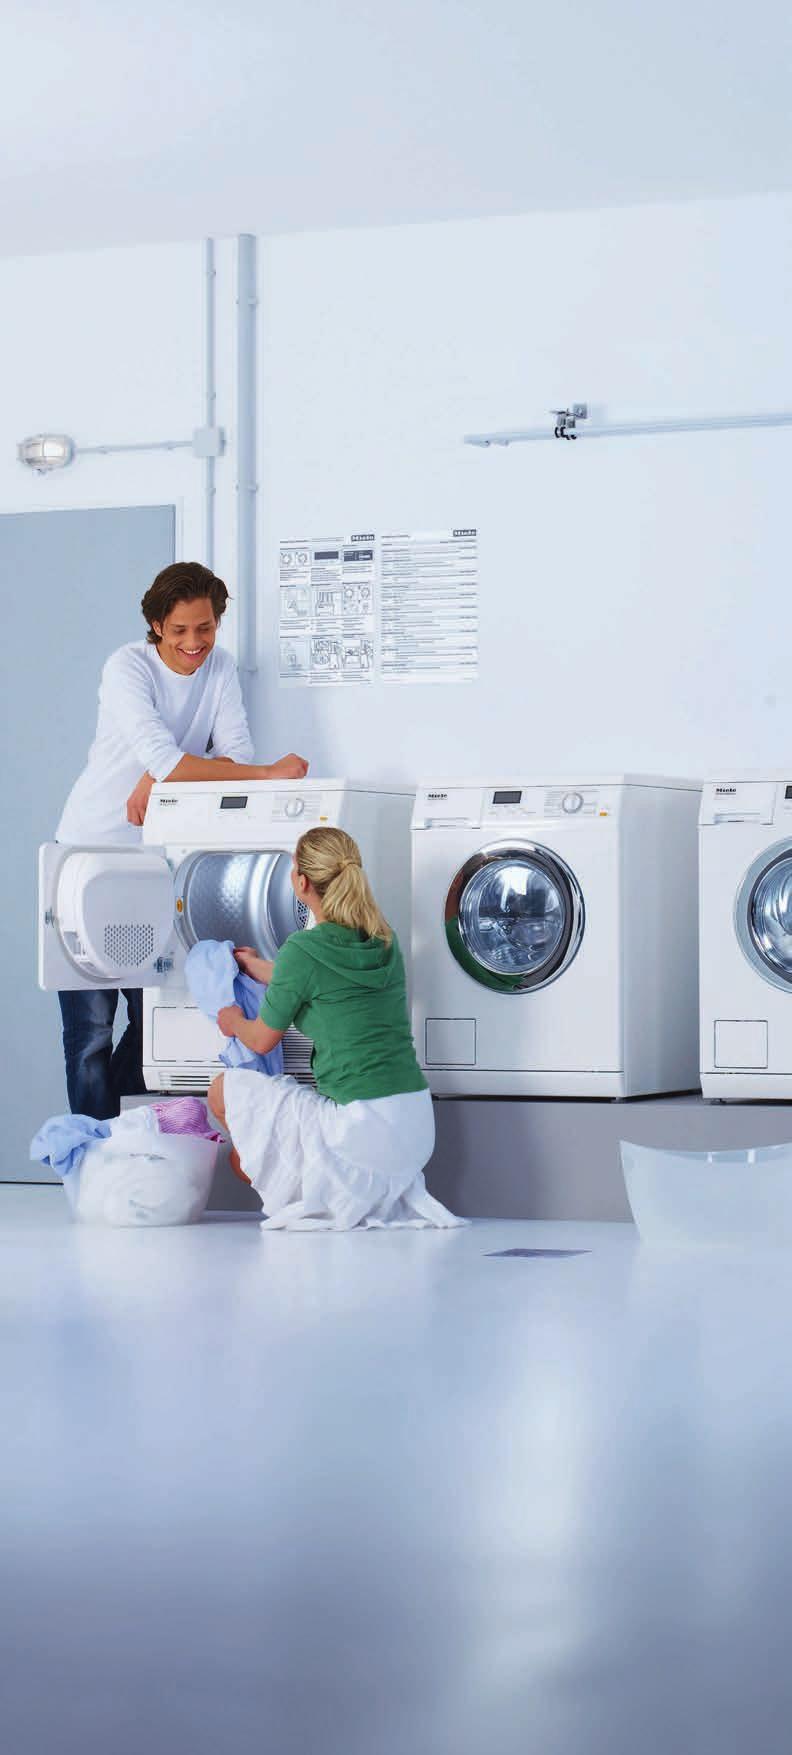 Die Kleinen Riesen zum Waschen und Trocknen Perfekte Wäschepflege mit System im Mehrfamilienhaus Mit allen Pluspunkten ausgerüstet Die Kleinen Riesen bieten alles, was eine Miele Waschmaschine oder